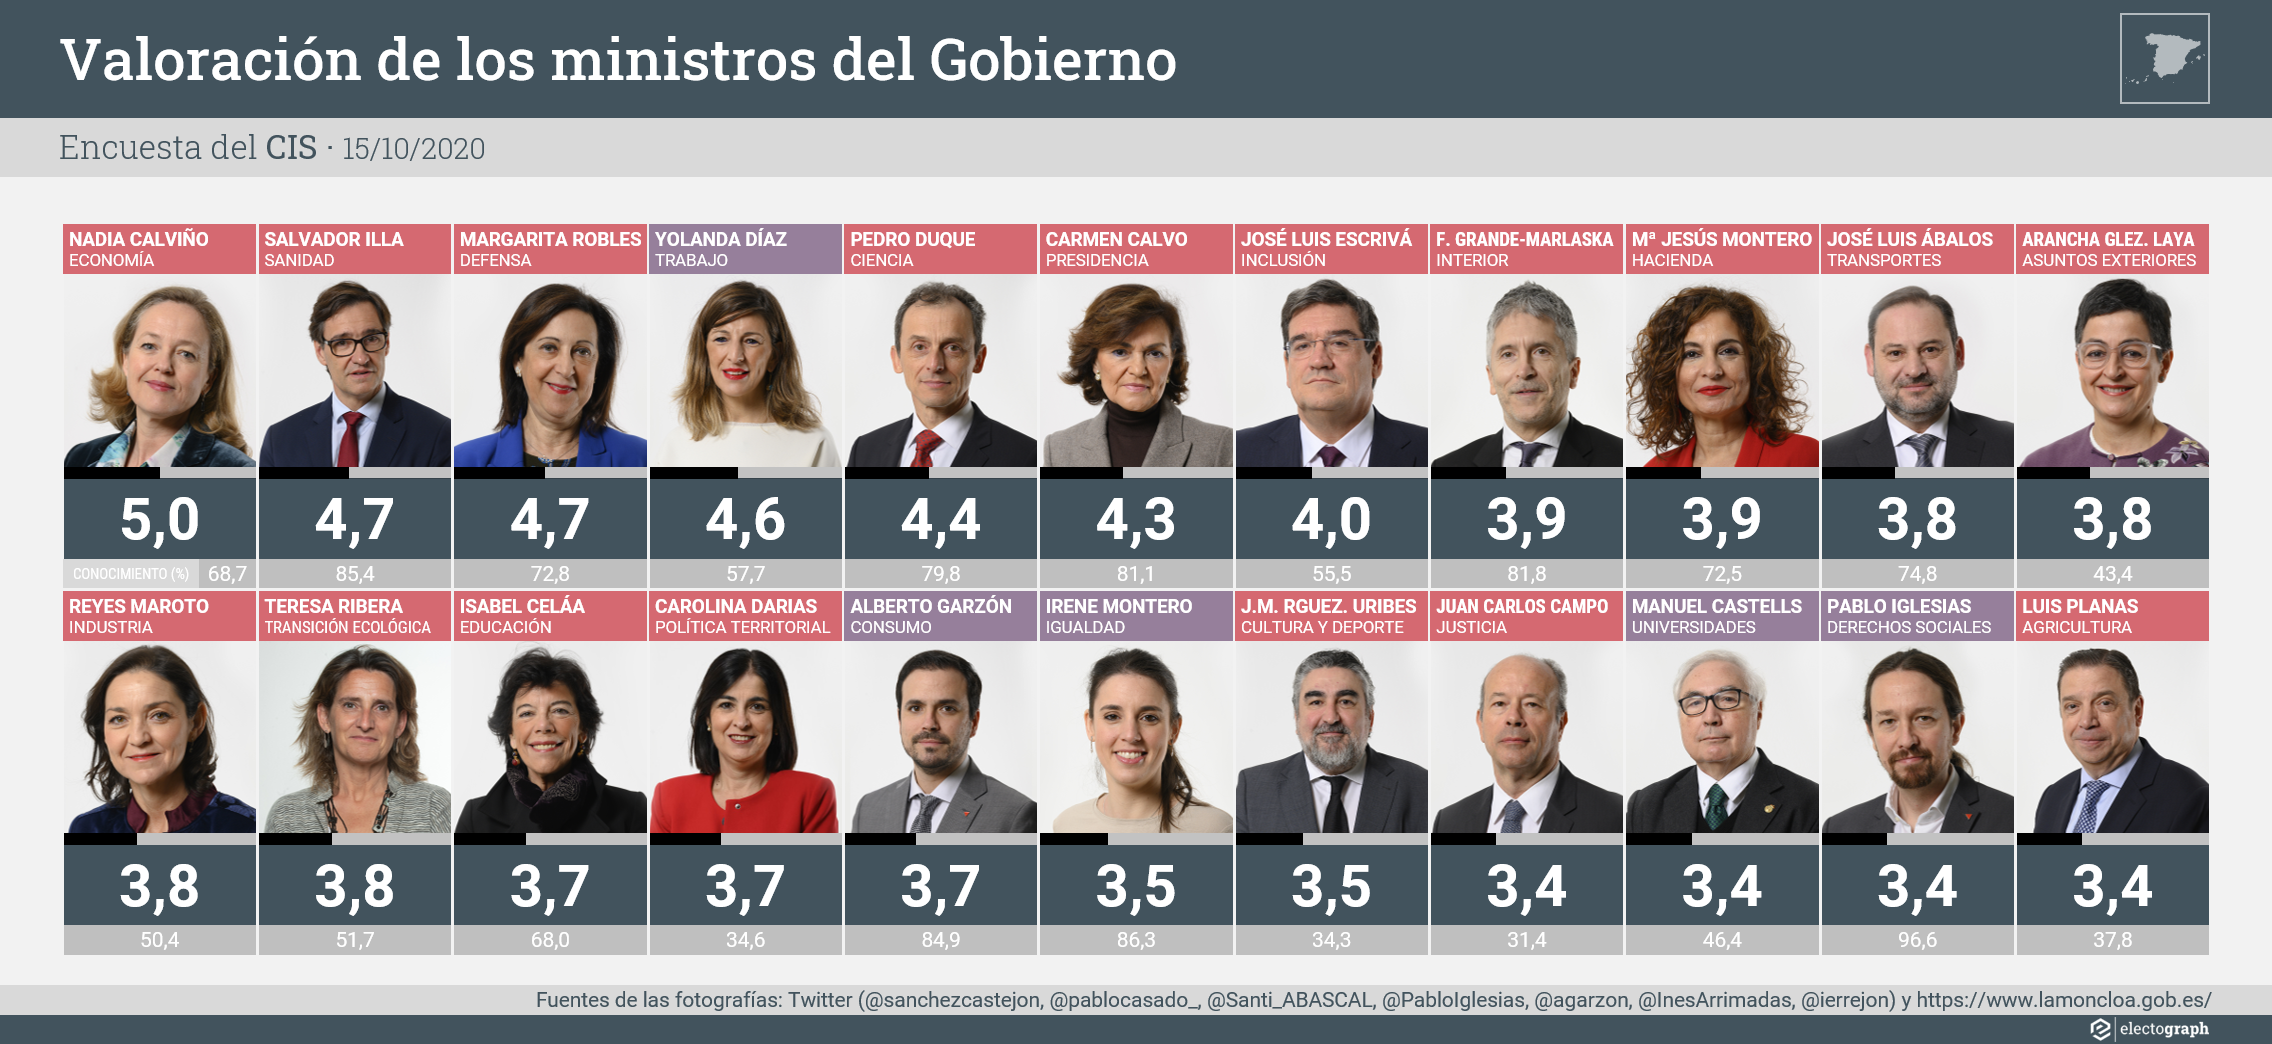 Valoración de los ministros del Gobierno, CIS octubre 2020